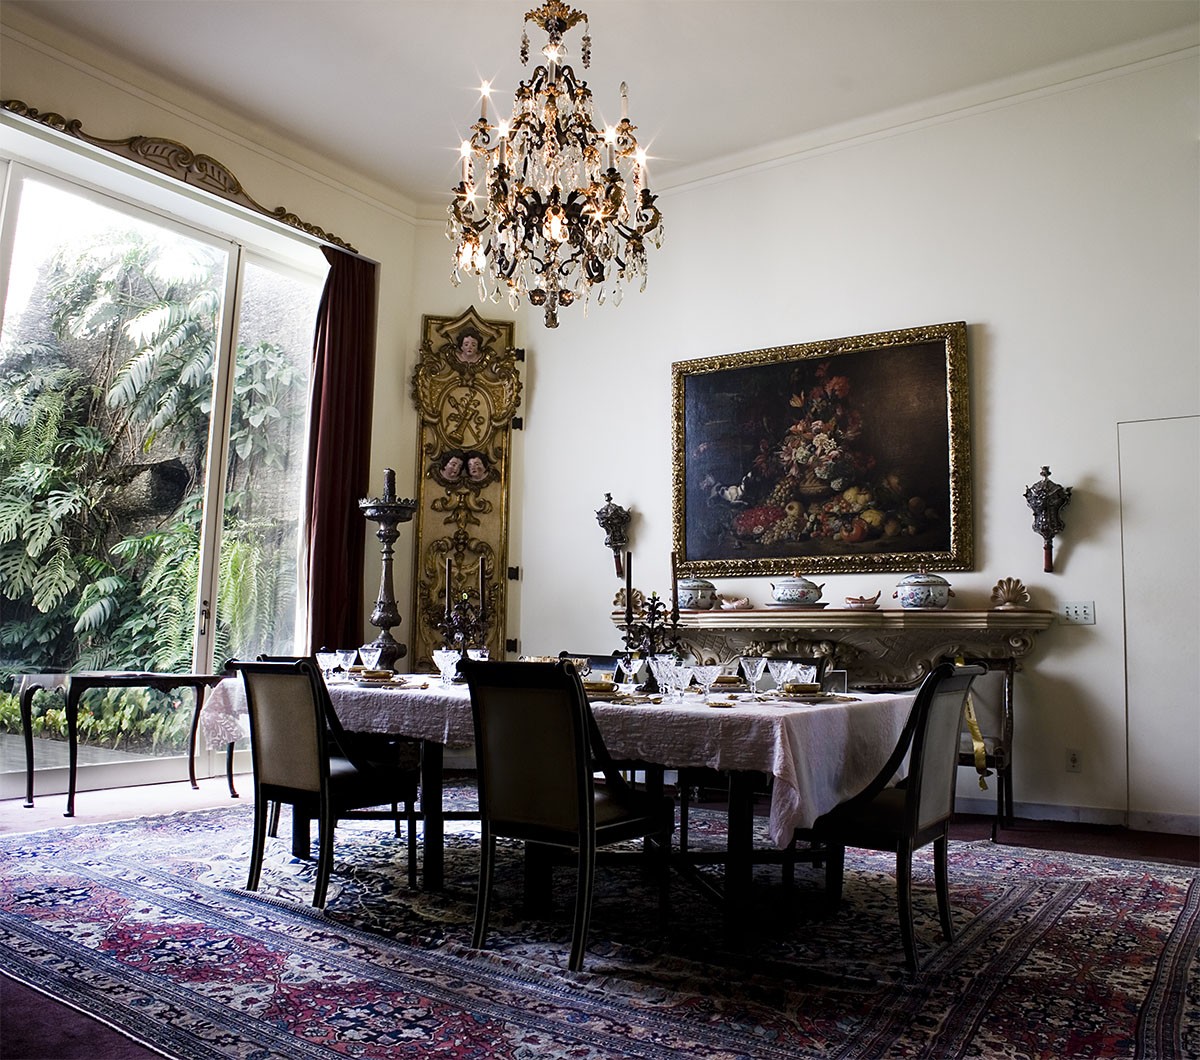 Sala de jantar que remonta ao estilo inglês do século XIX é um dos destaques da exposição na Casa Museu Ema Klabin  (Foto: Erik Diniz / Arquivo Ema Klabin)